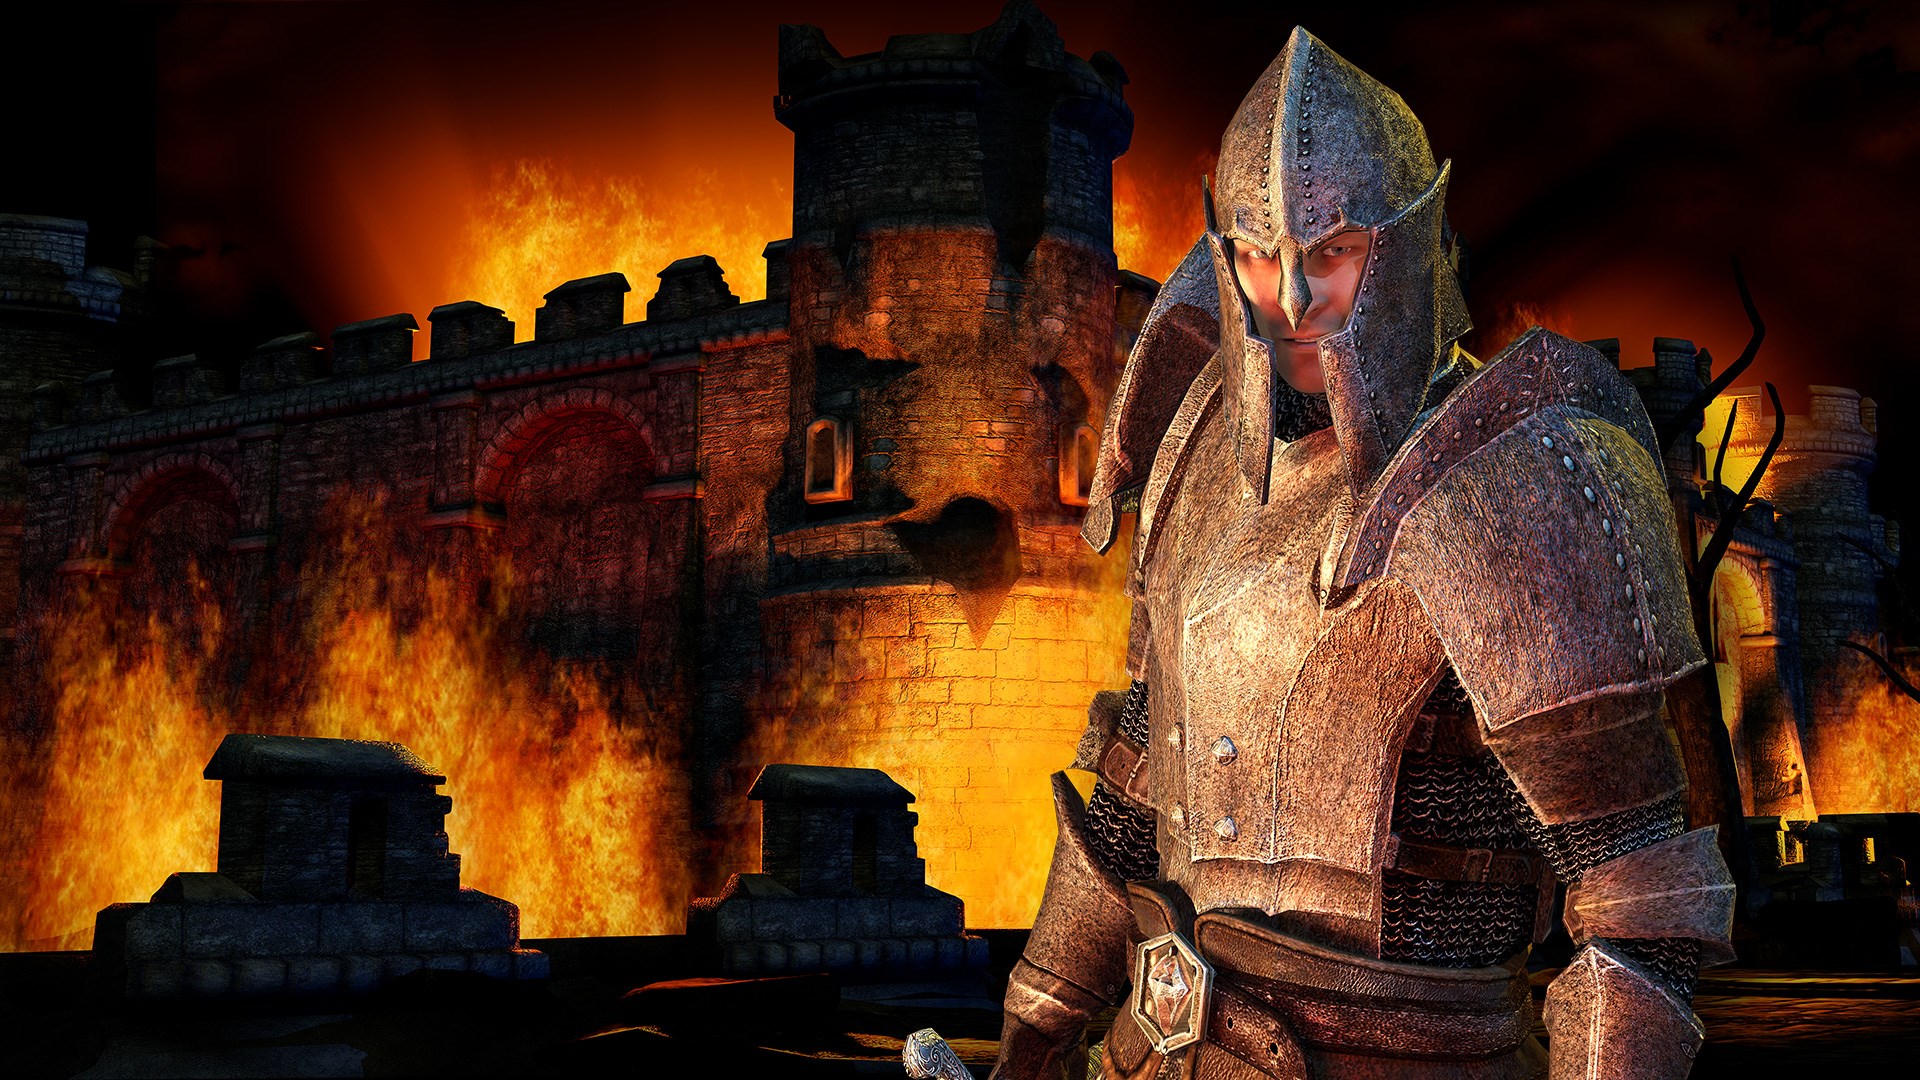 Prime Gaming’s April's Offering includes The Elder Scrolls IV: Oblivion